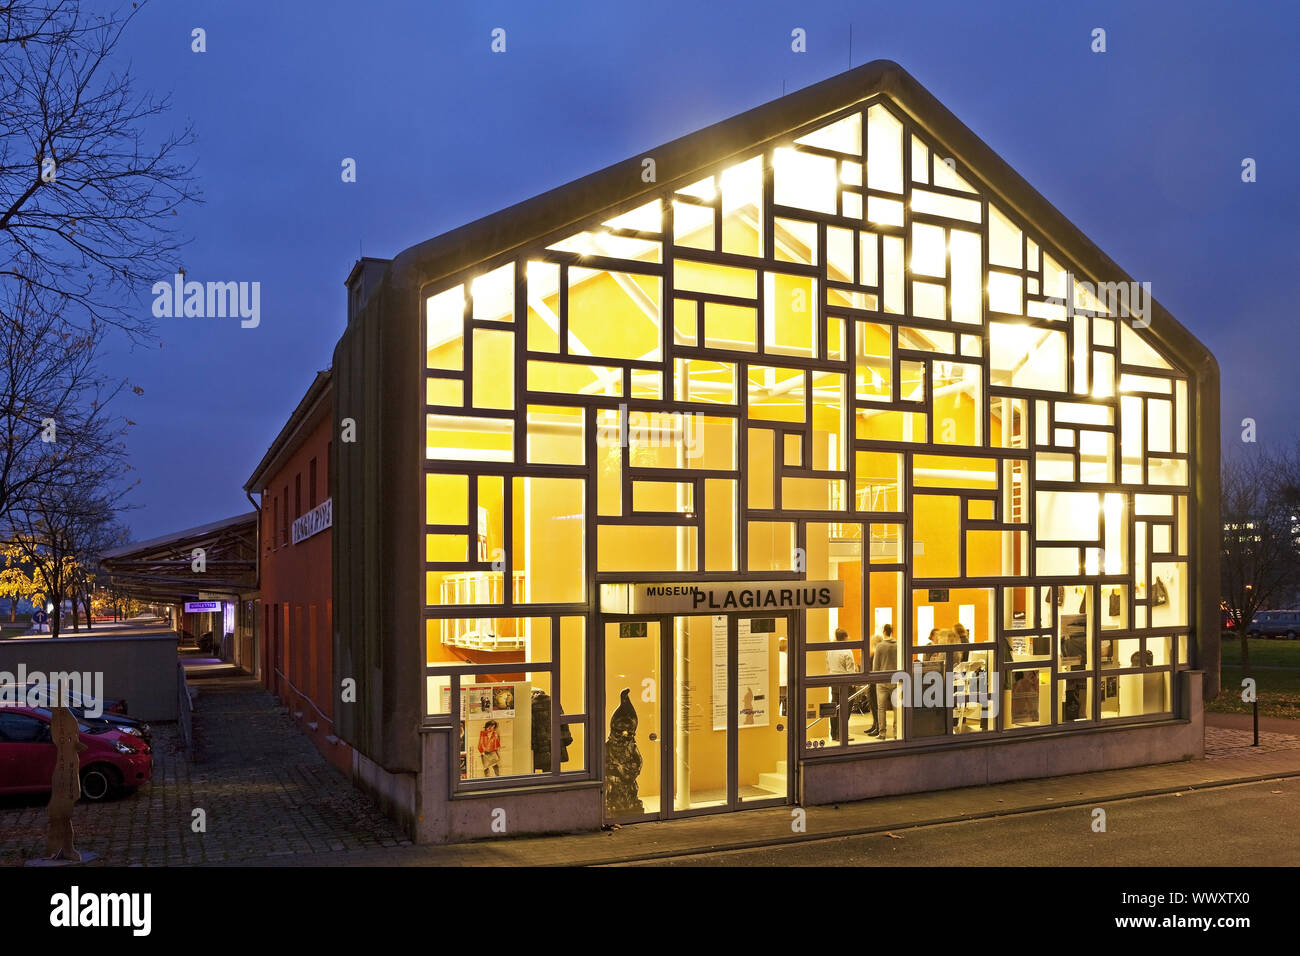 illuminated museum Plagiarius, Solingen, Bergisches Land, North Rhine-Westphalia, Germany, Europe Stock Photo